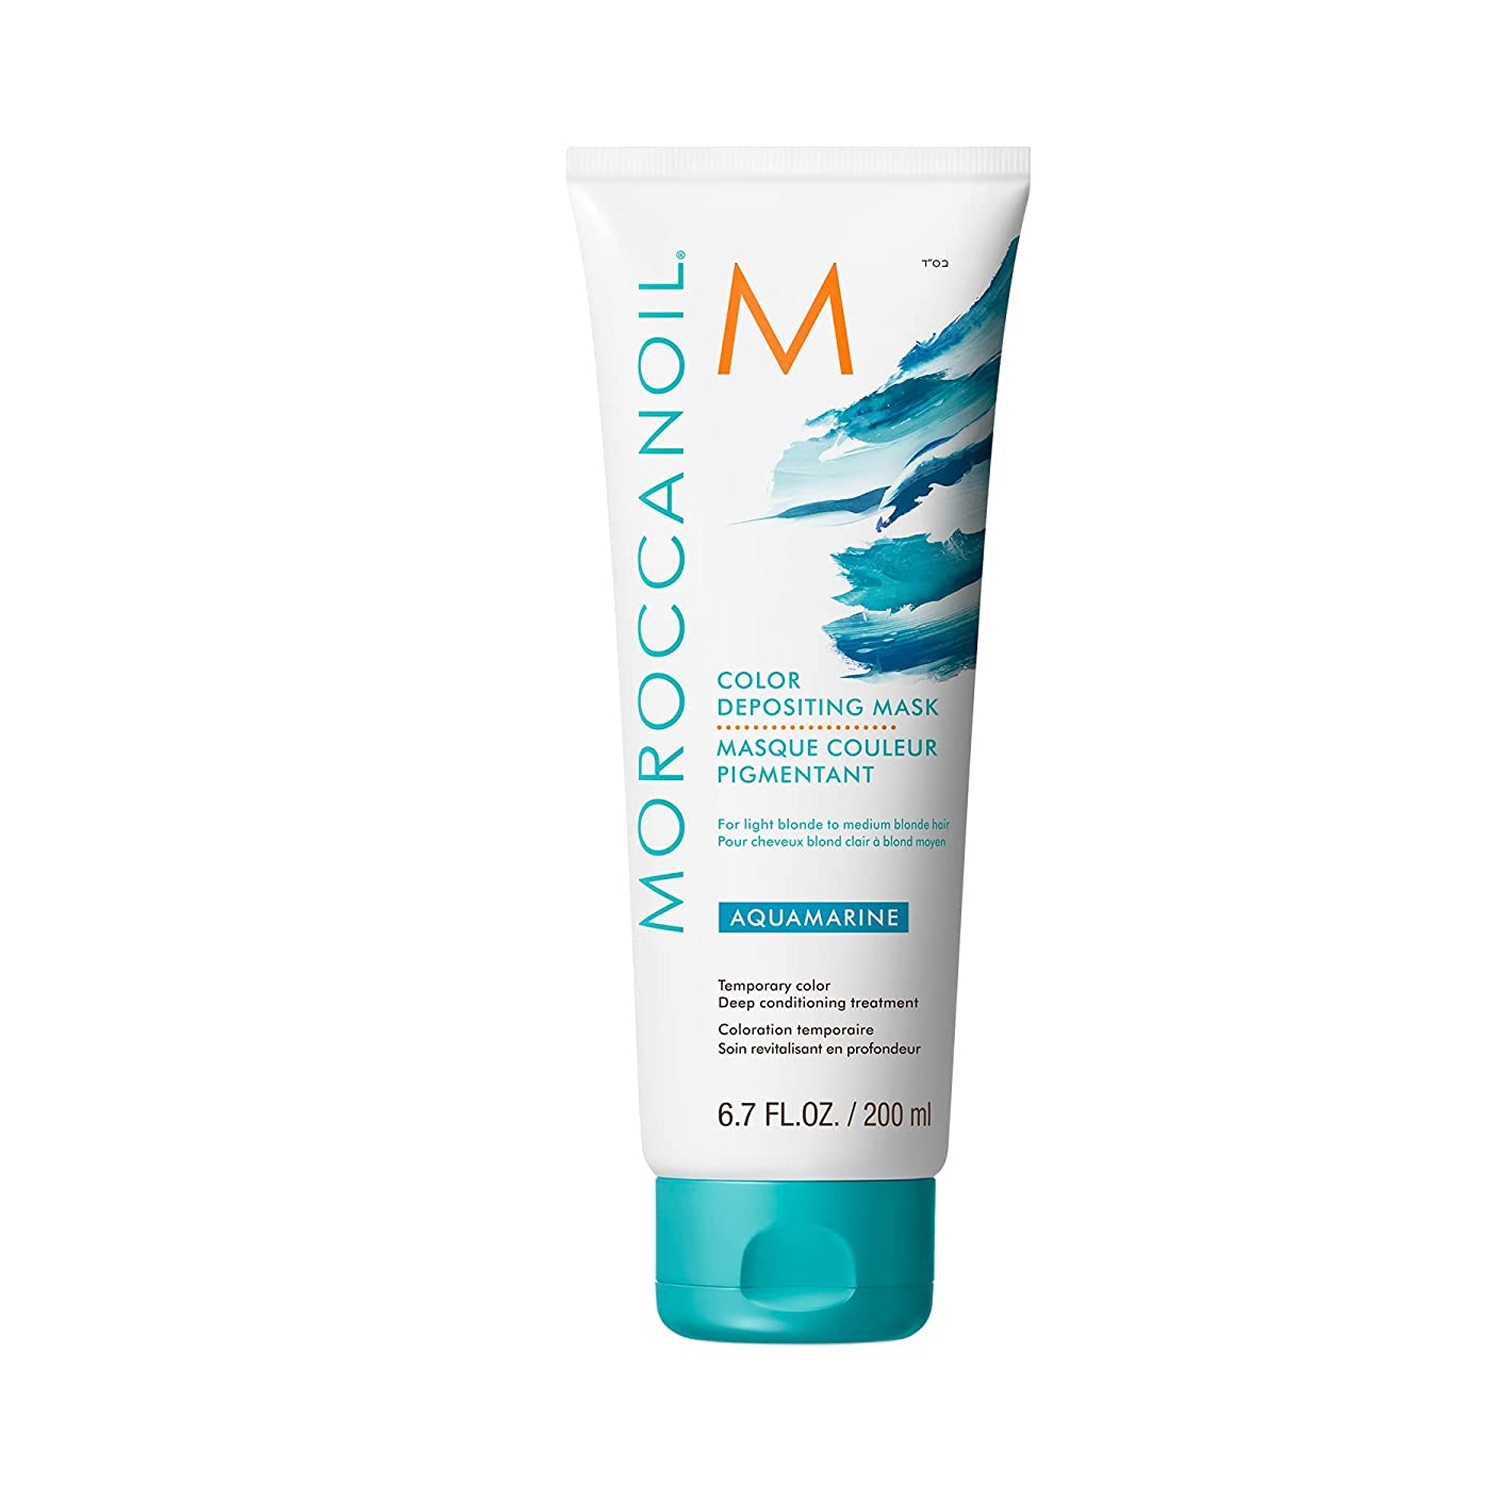 Moroccanoil | Moroccanoil Depositing Mask Hair Cream - Aquamarine (200ml)